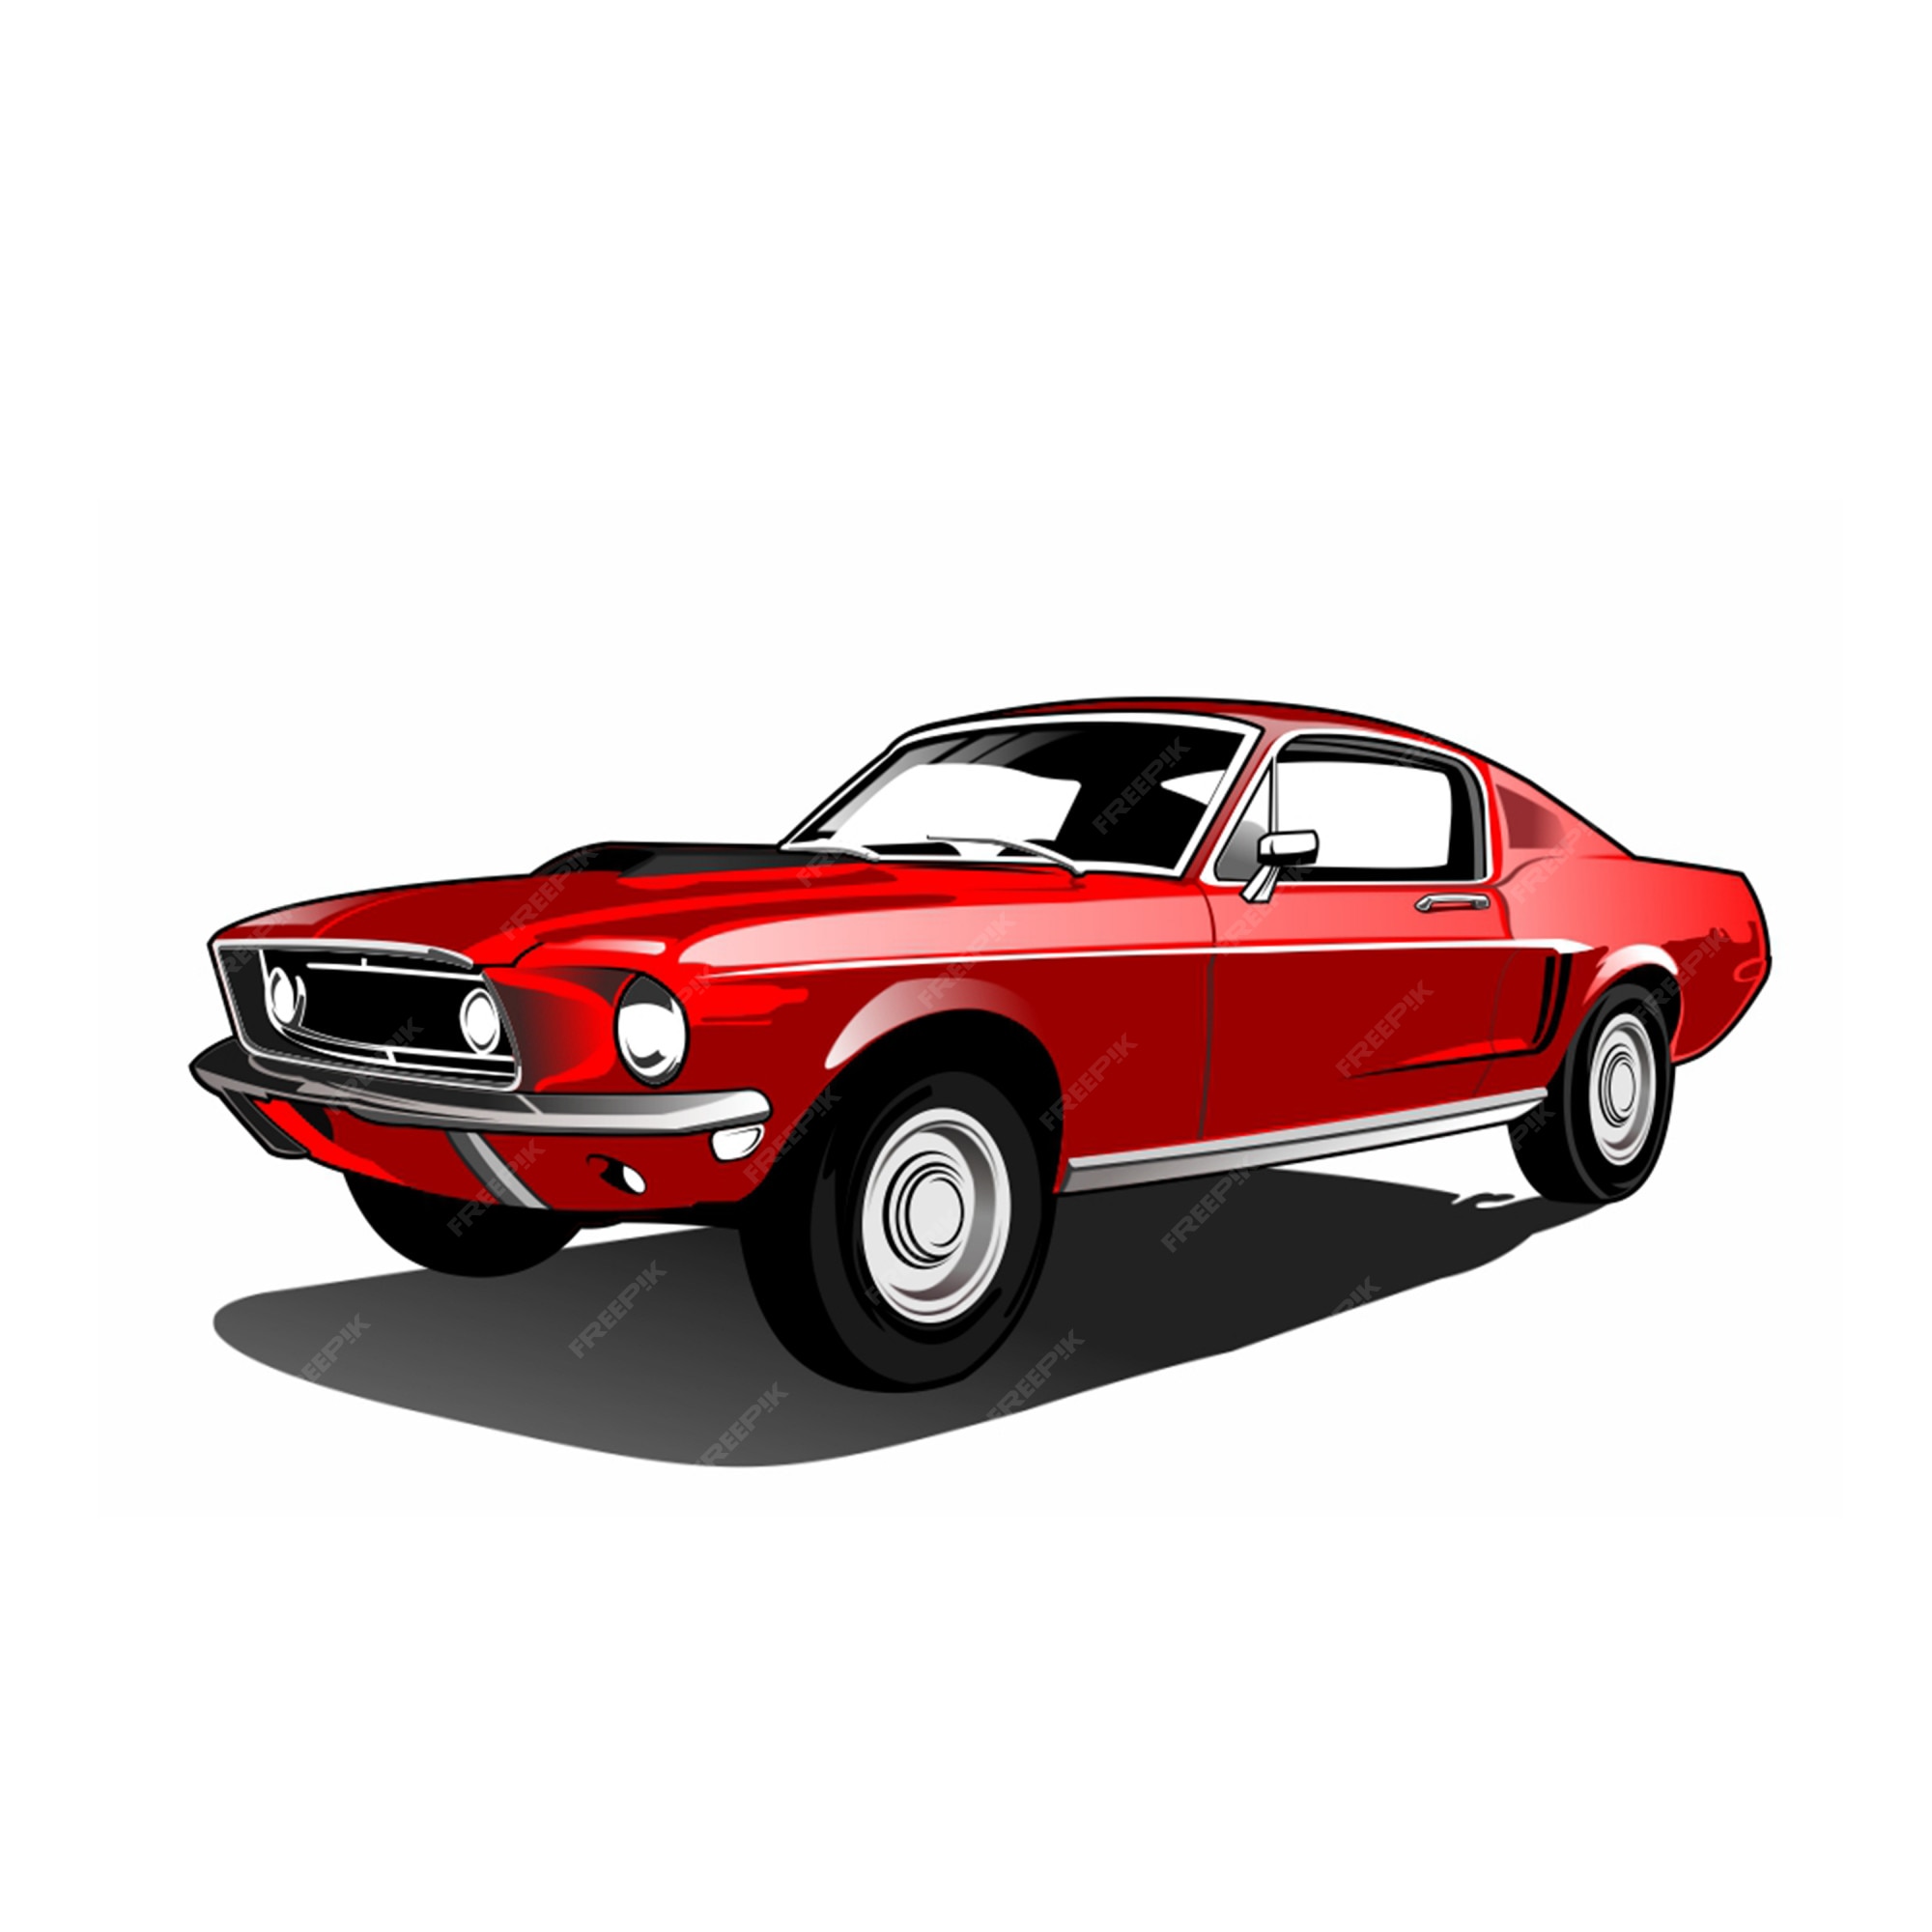 Page 2 | Mustang Car Images - Free Download on Freepik